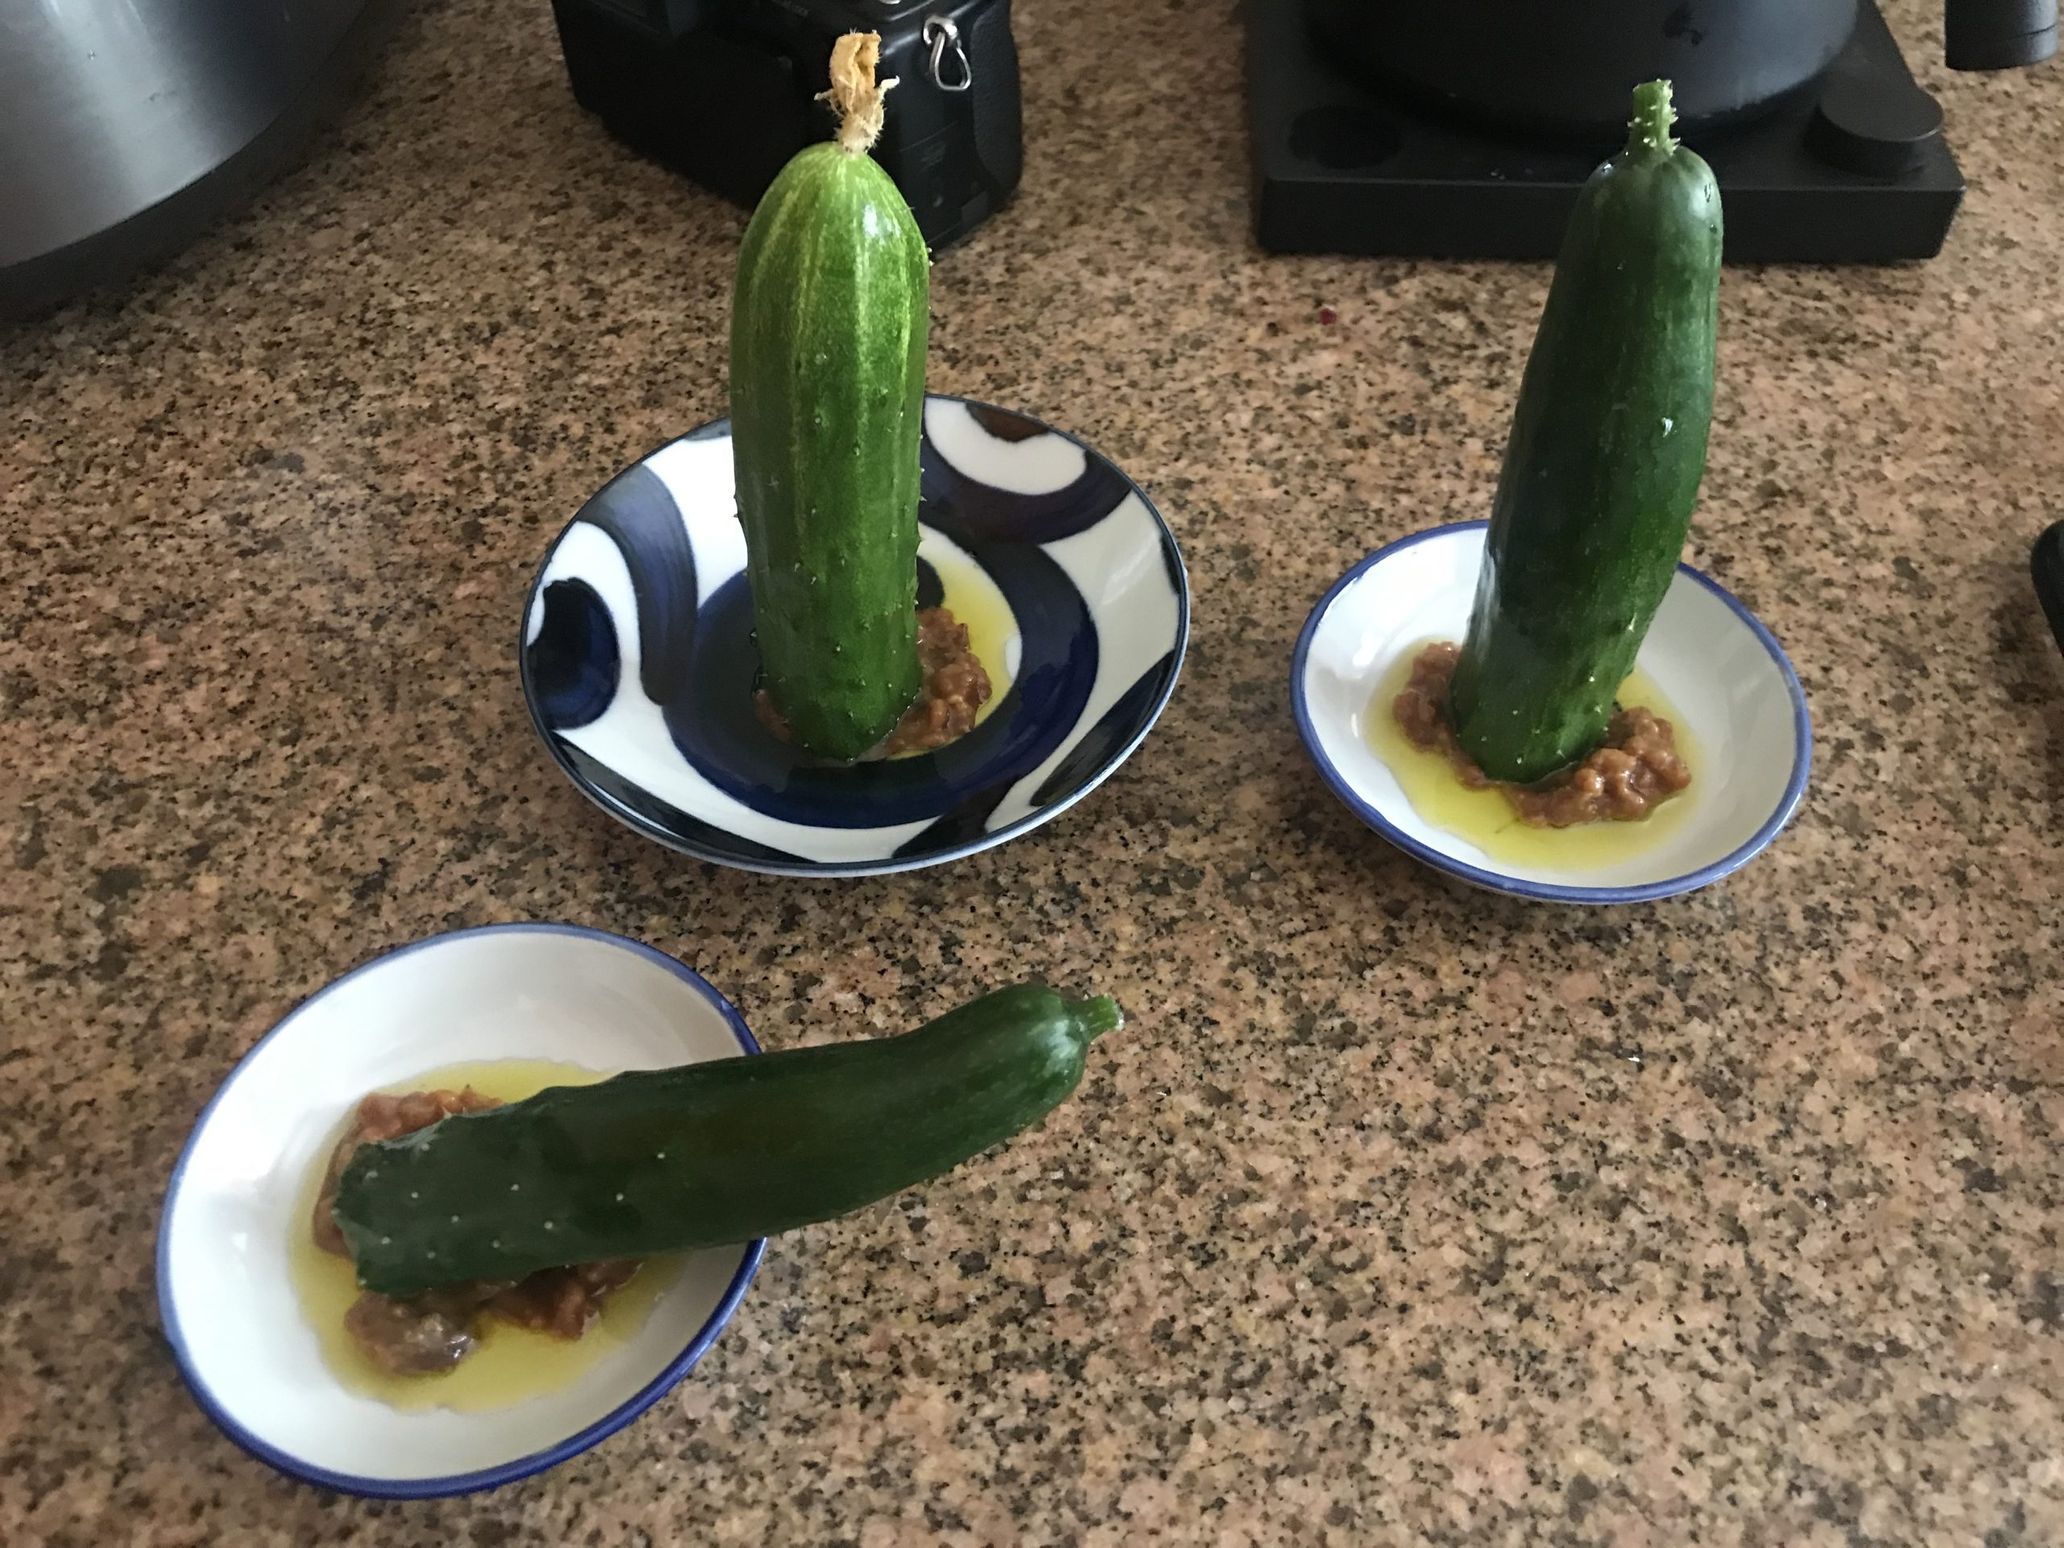 Manganji peppers and Cucumbers 